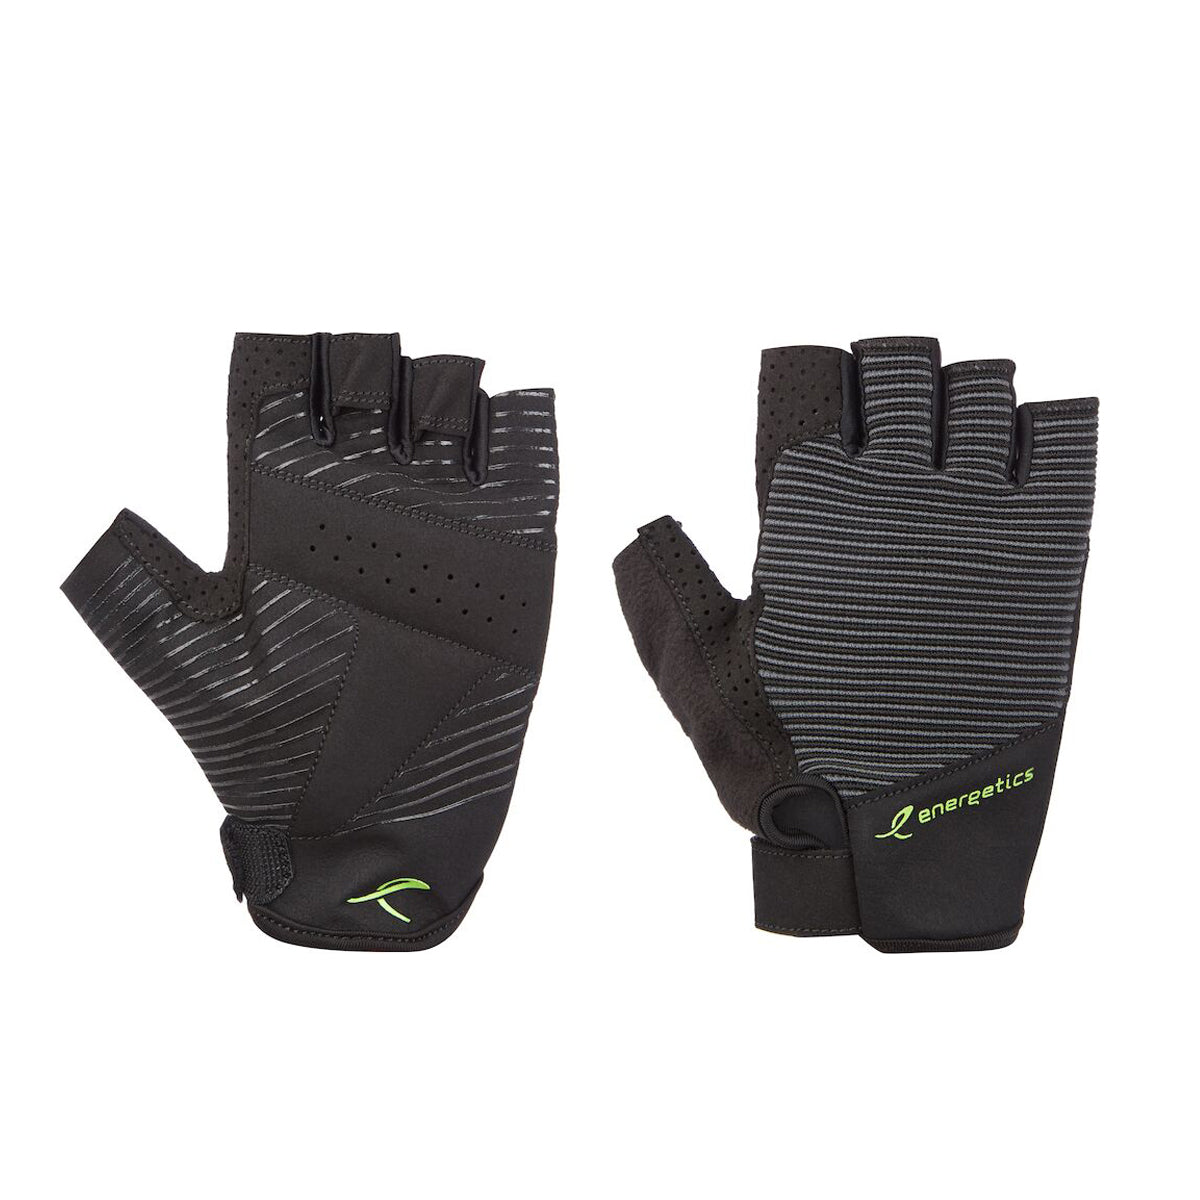 Mfg450 Fitness Gloves